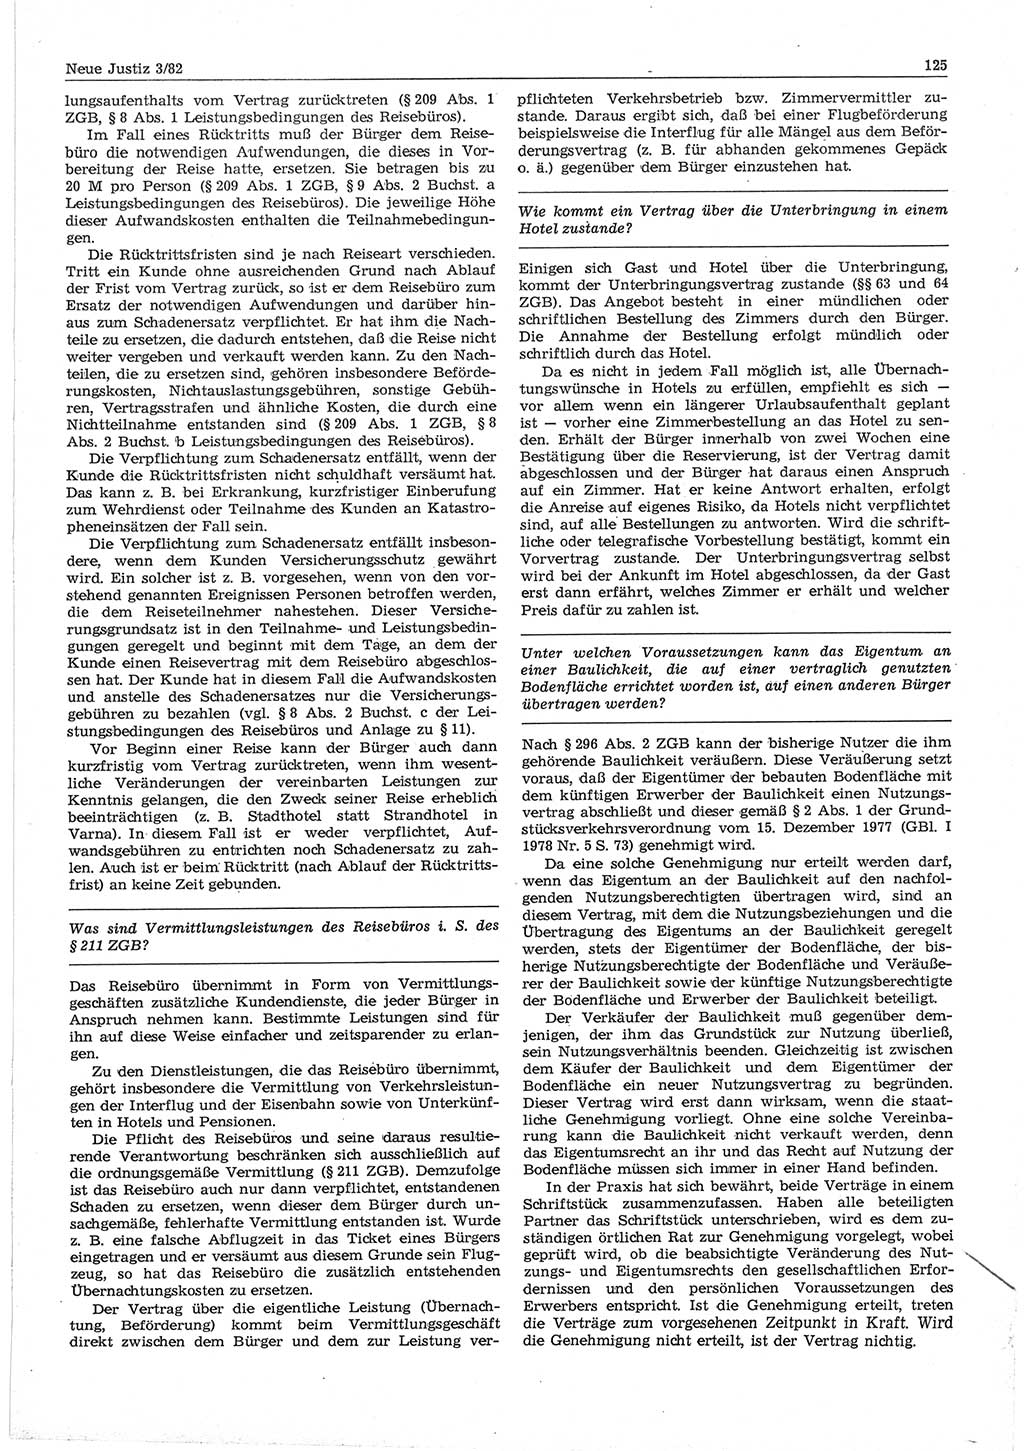 Neue Justiz (NJ), Zeitschrift für sozialistisches Recht und Gesetzlichkeit [Deutsche Demokratische Republik (DDR)], 36. Jahrgang 1982, Seite 125 (NJ DDR 1982, S. 125)